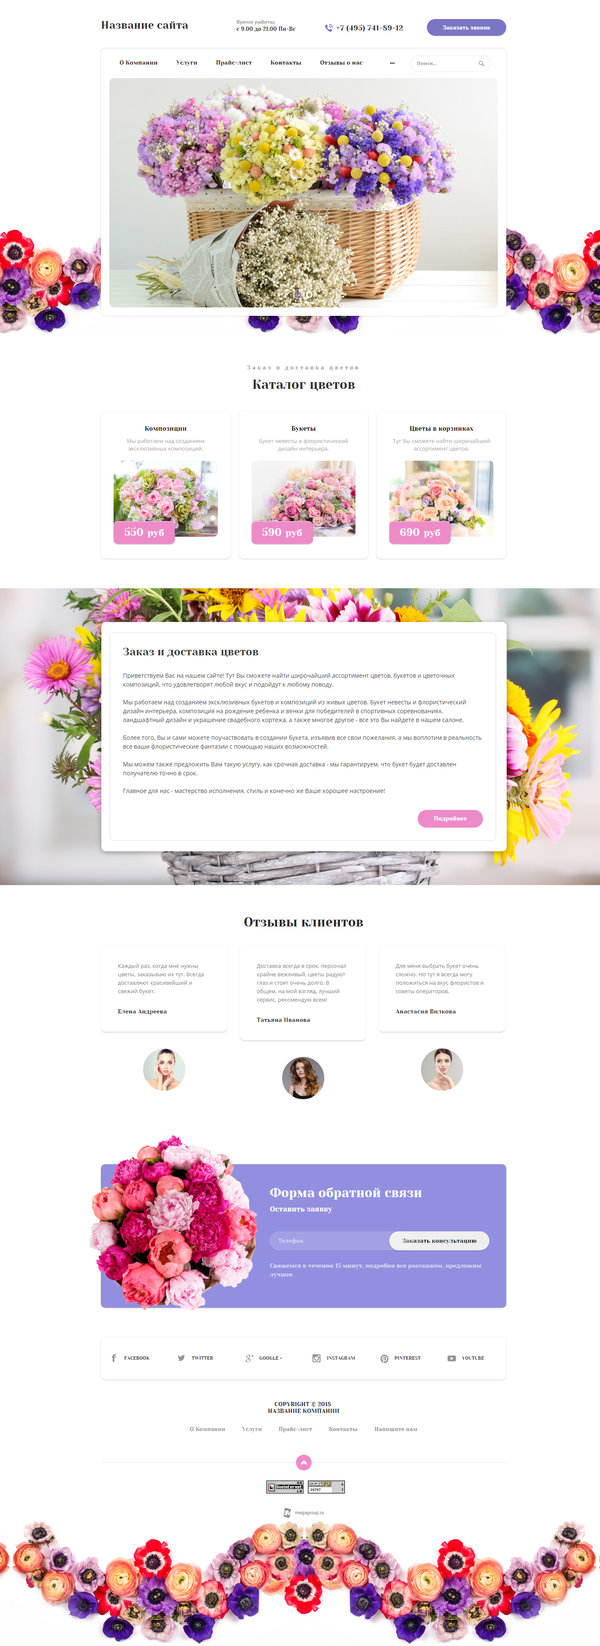 Готовый Сайт-Бизнес № 2021258 - Цветы растения (Десктопная версия)